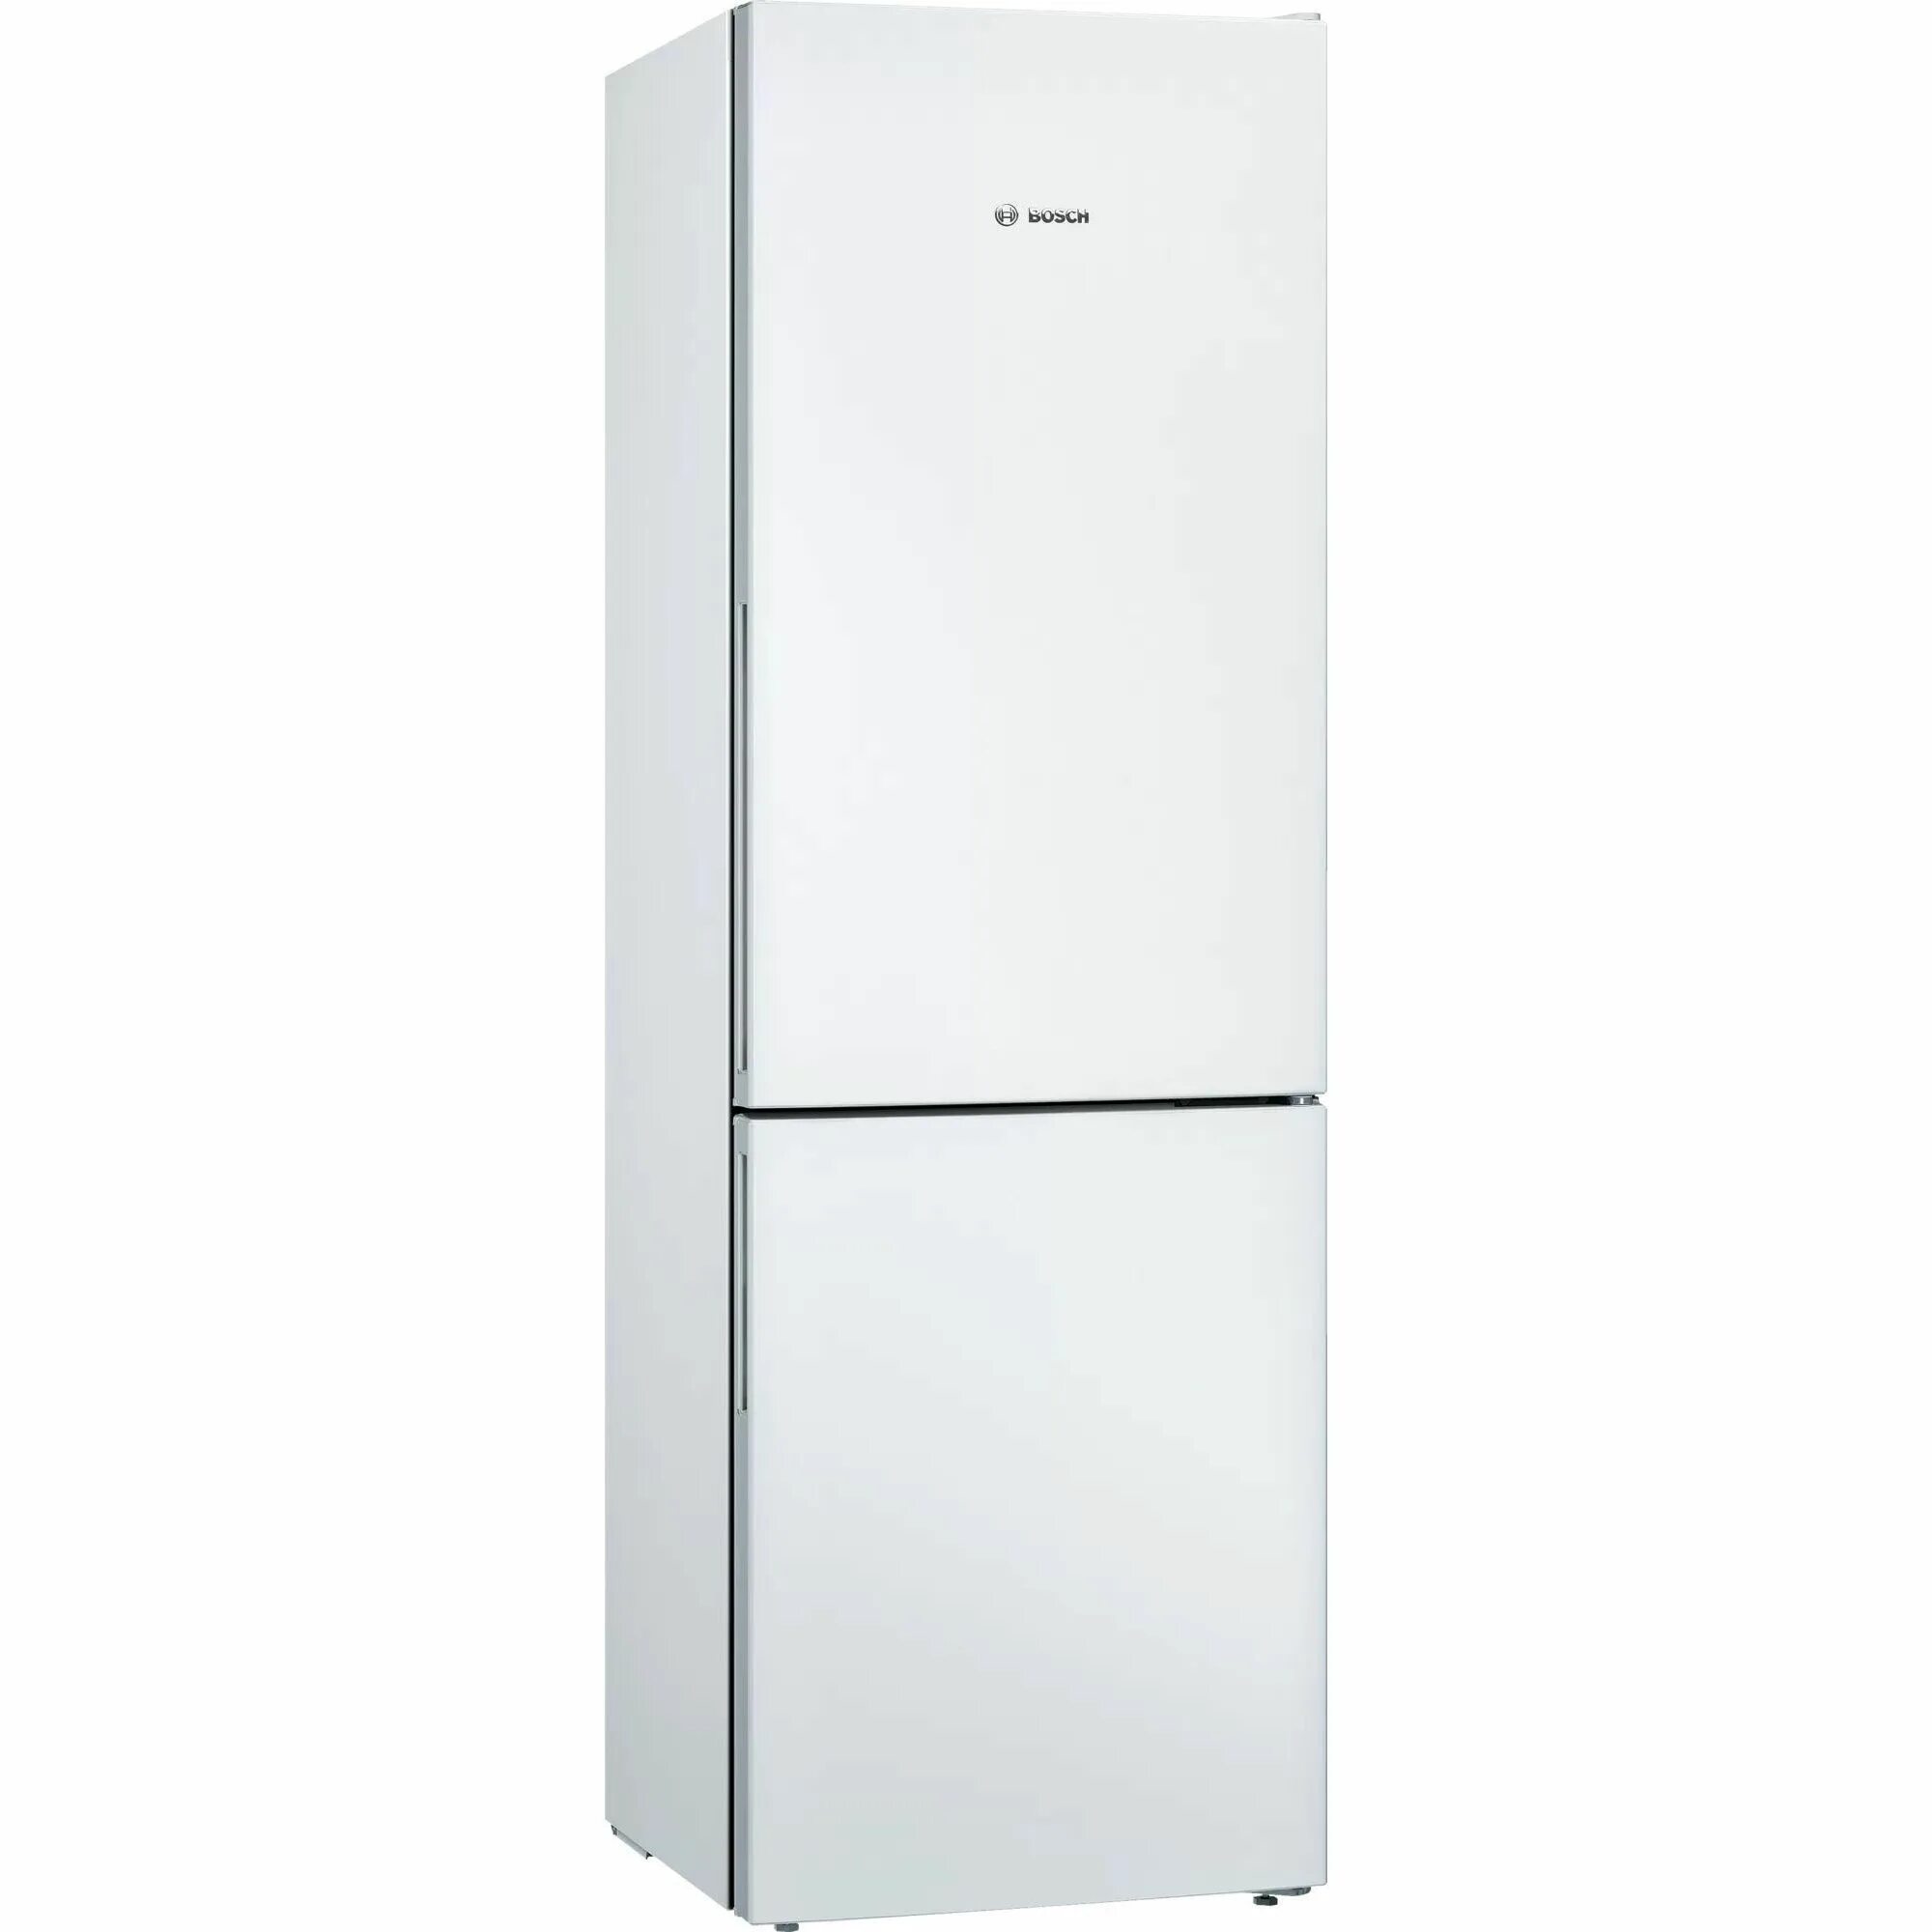 Bosch kgv39xw22r. Холодильник бош kgv36nw1ar. Bosch kgn33nw21u. Холодильник Bosch kgv36xw21r белый. Индезит холодильники недорого